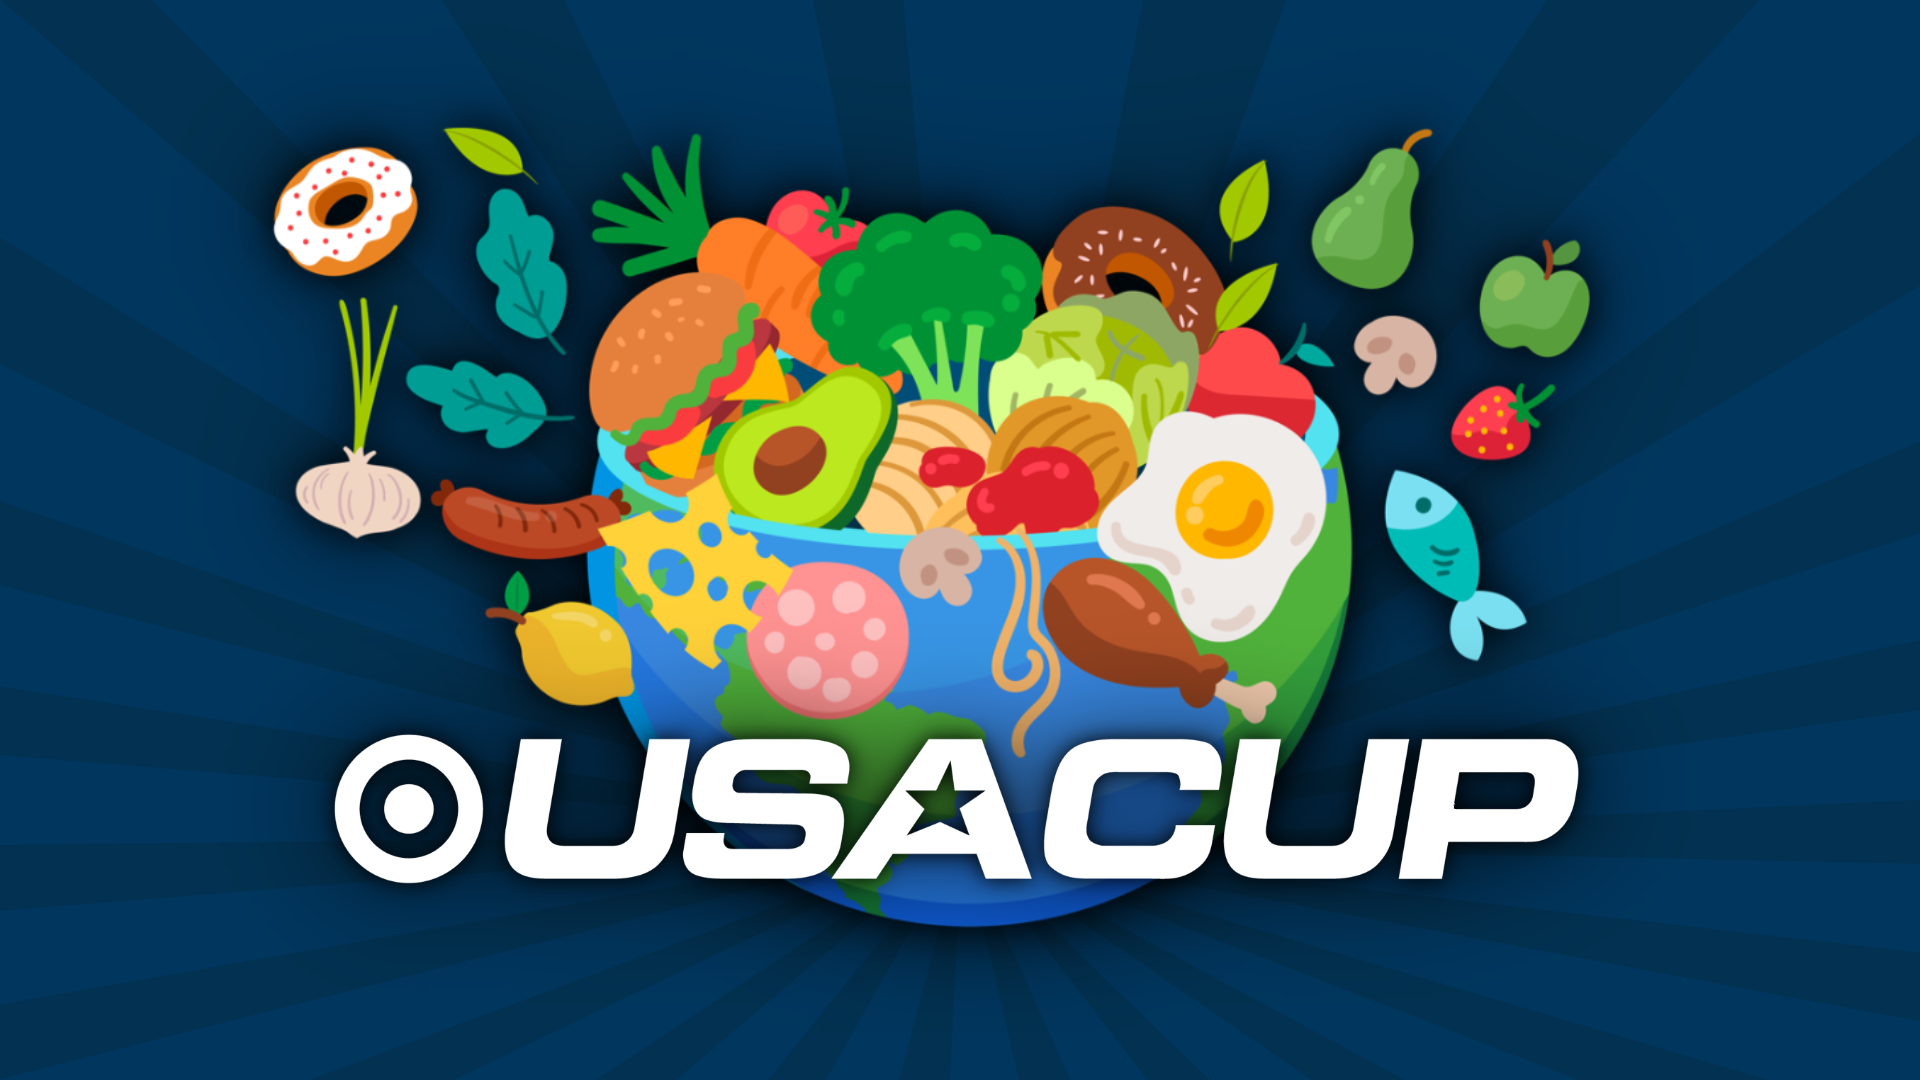 USA CUP Recipe graphic